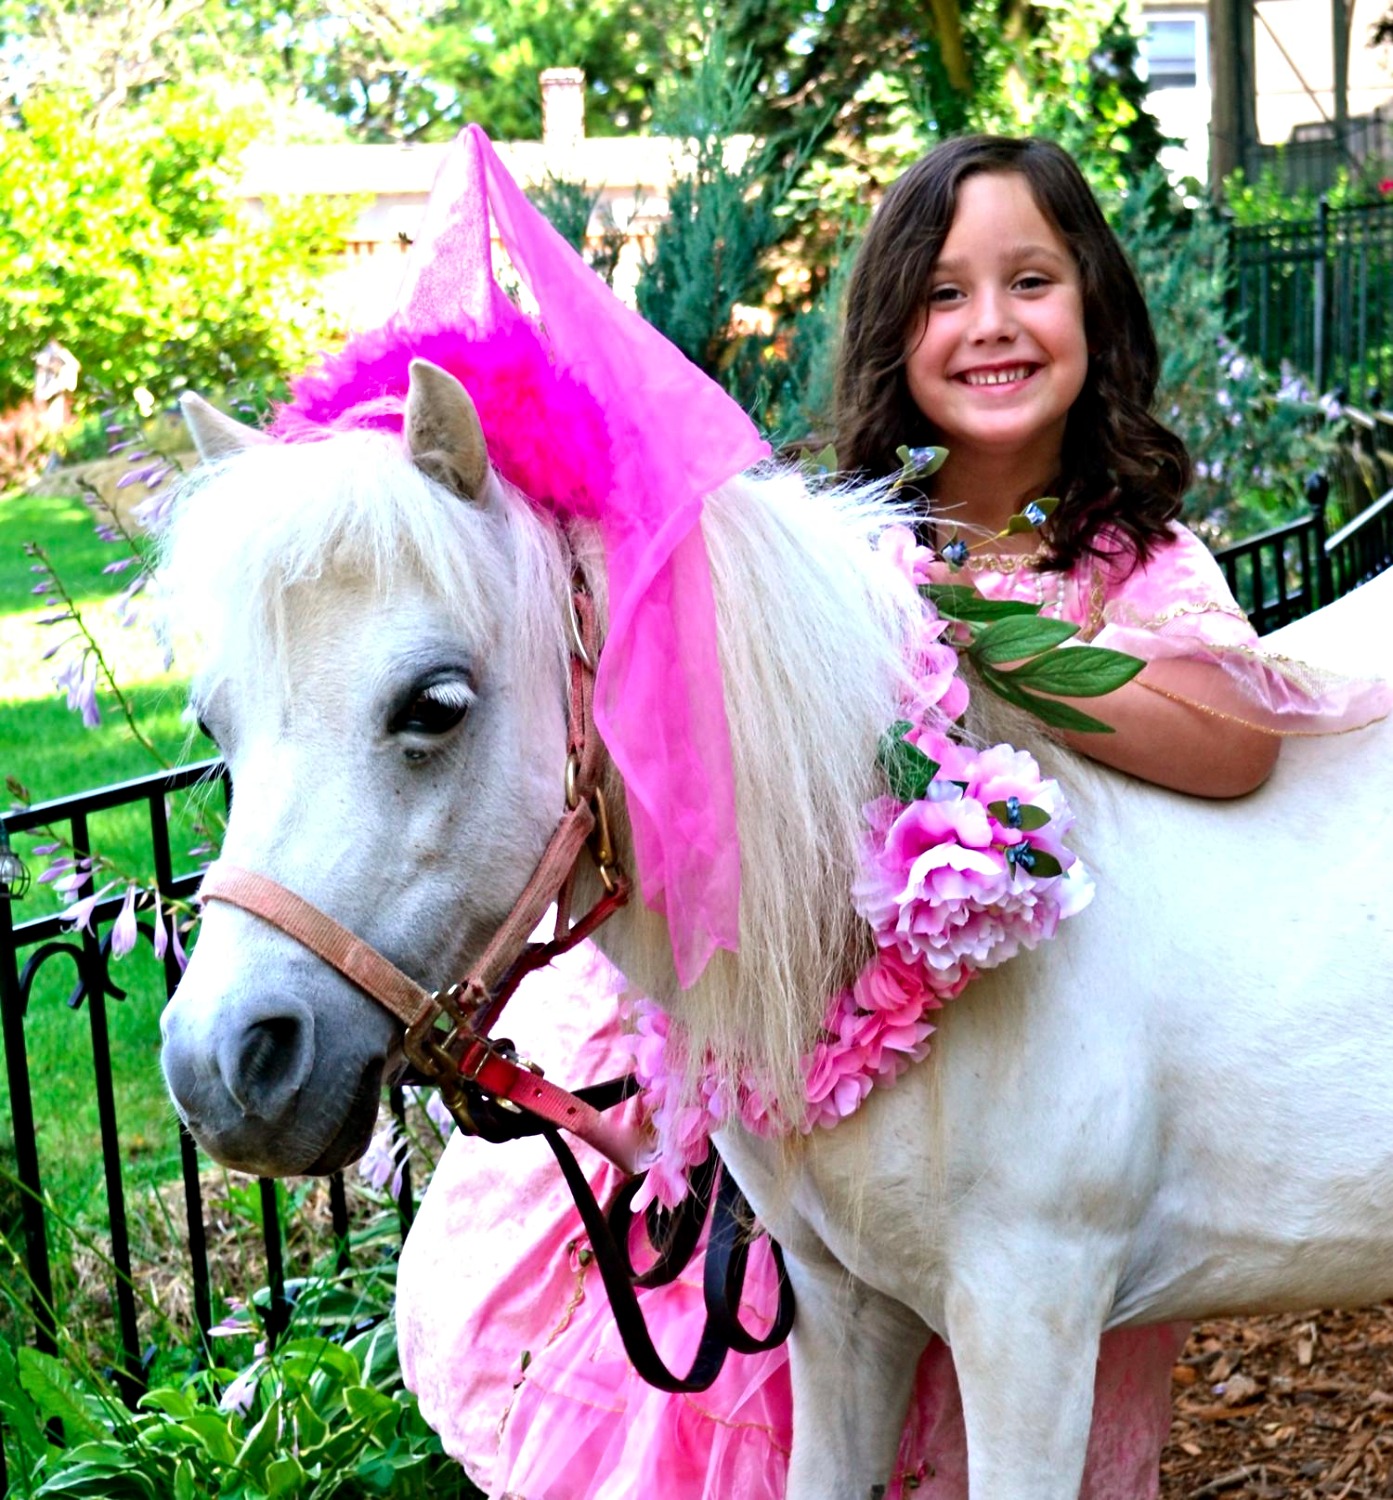 A pony dressed like a princess.